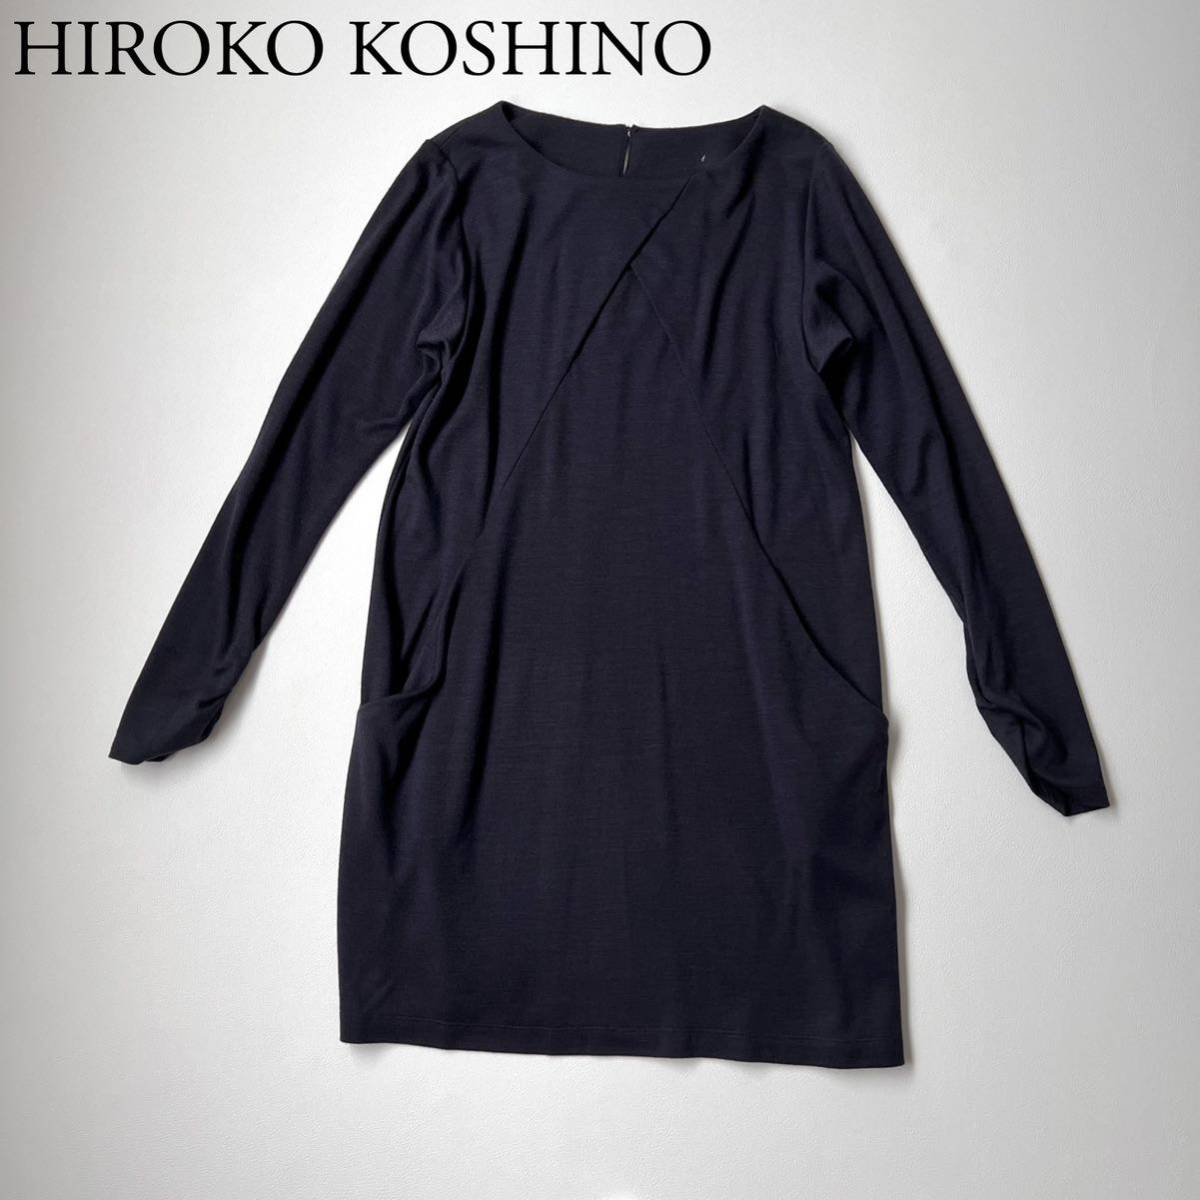 HIROKO KOSHINO ヒロココシノ 膝丈ワンピース フロントデザイン ウール